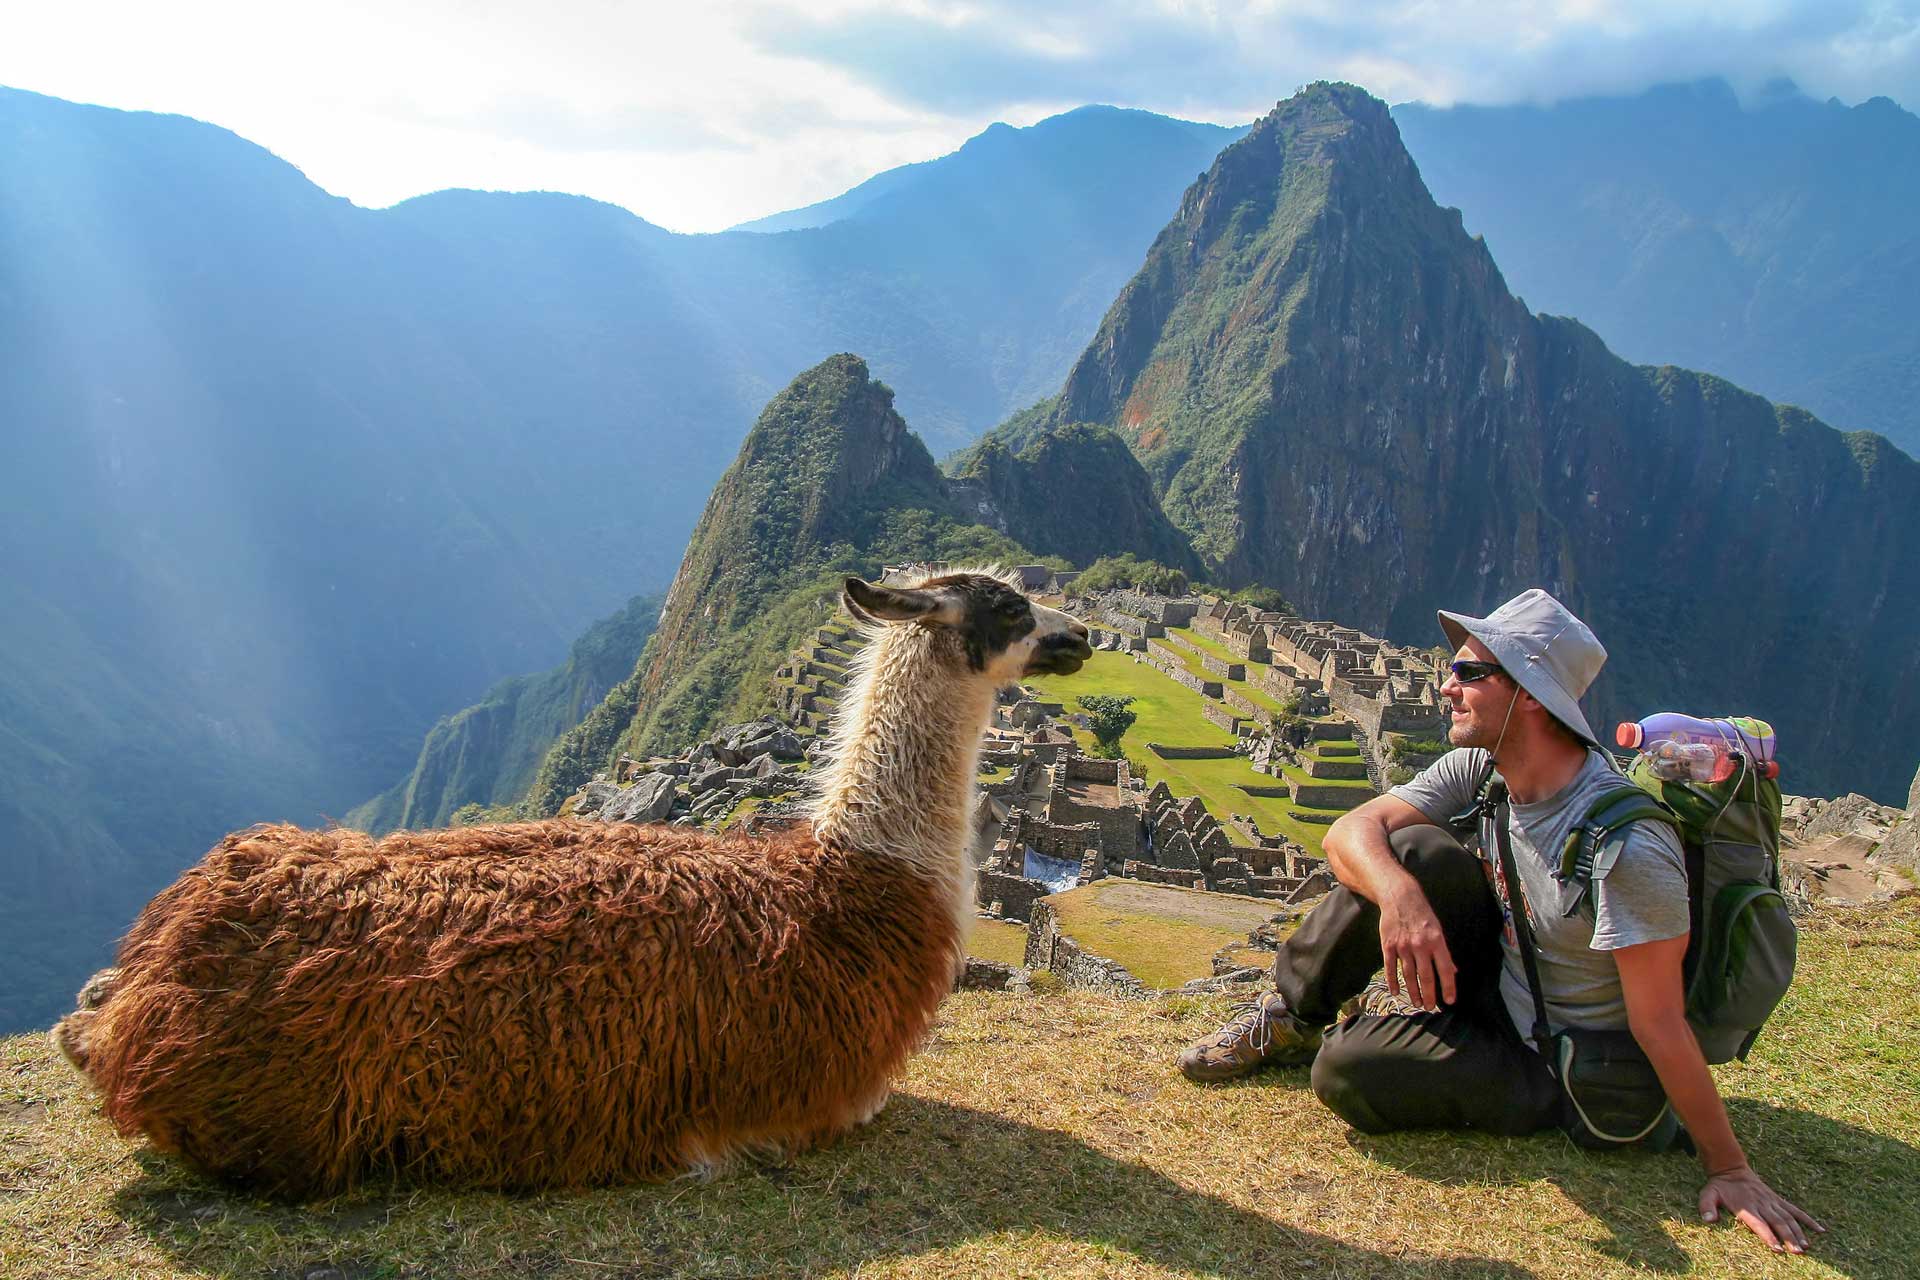 Tourist and llama sitting in front of Machu Picchu, Peru